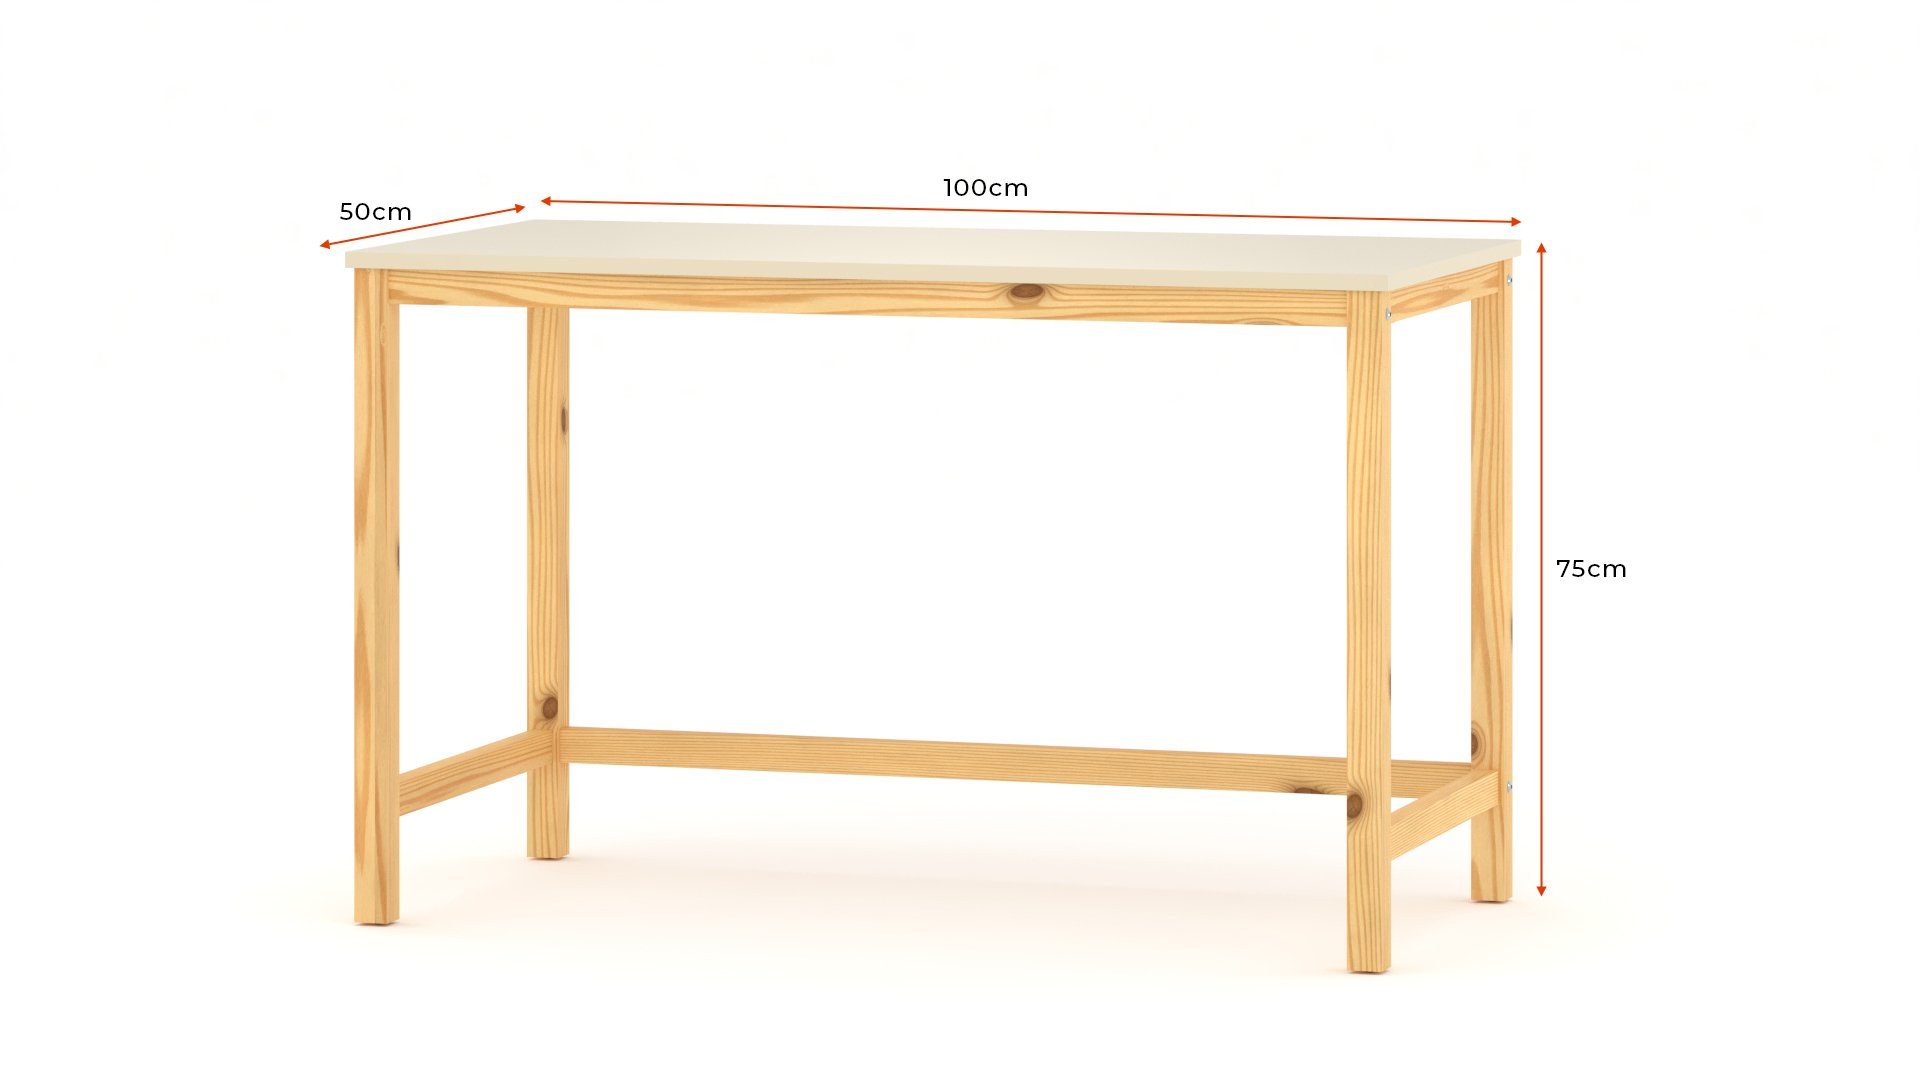 Siblo (Schreibtisch Natural mit bunter Rot Johny Johny Schreibtisch Tischplatte) Tischplatte mit Natural Schreibtisch bunter